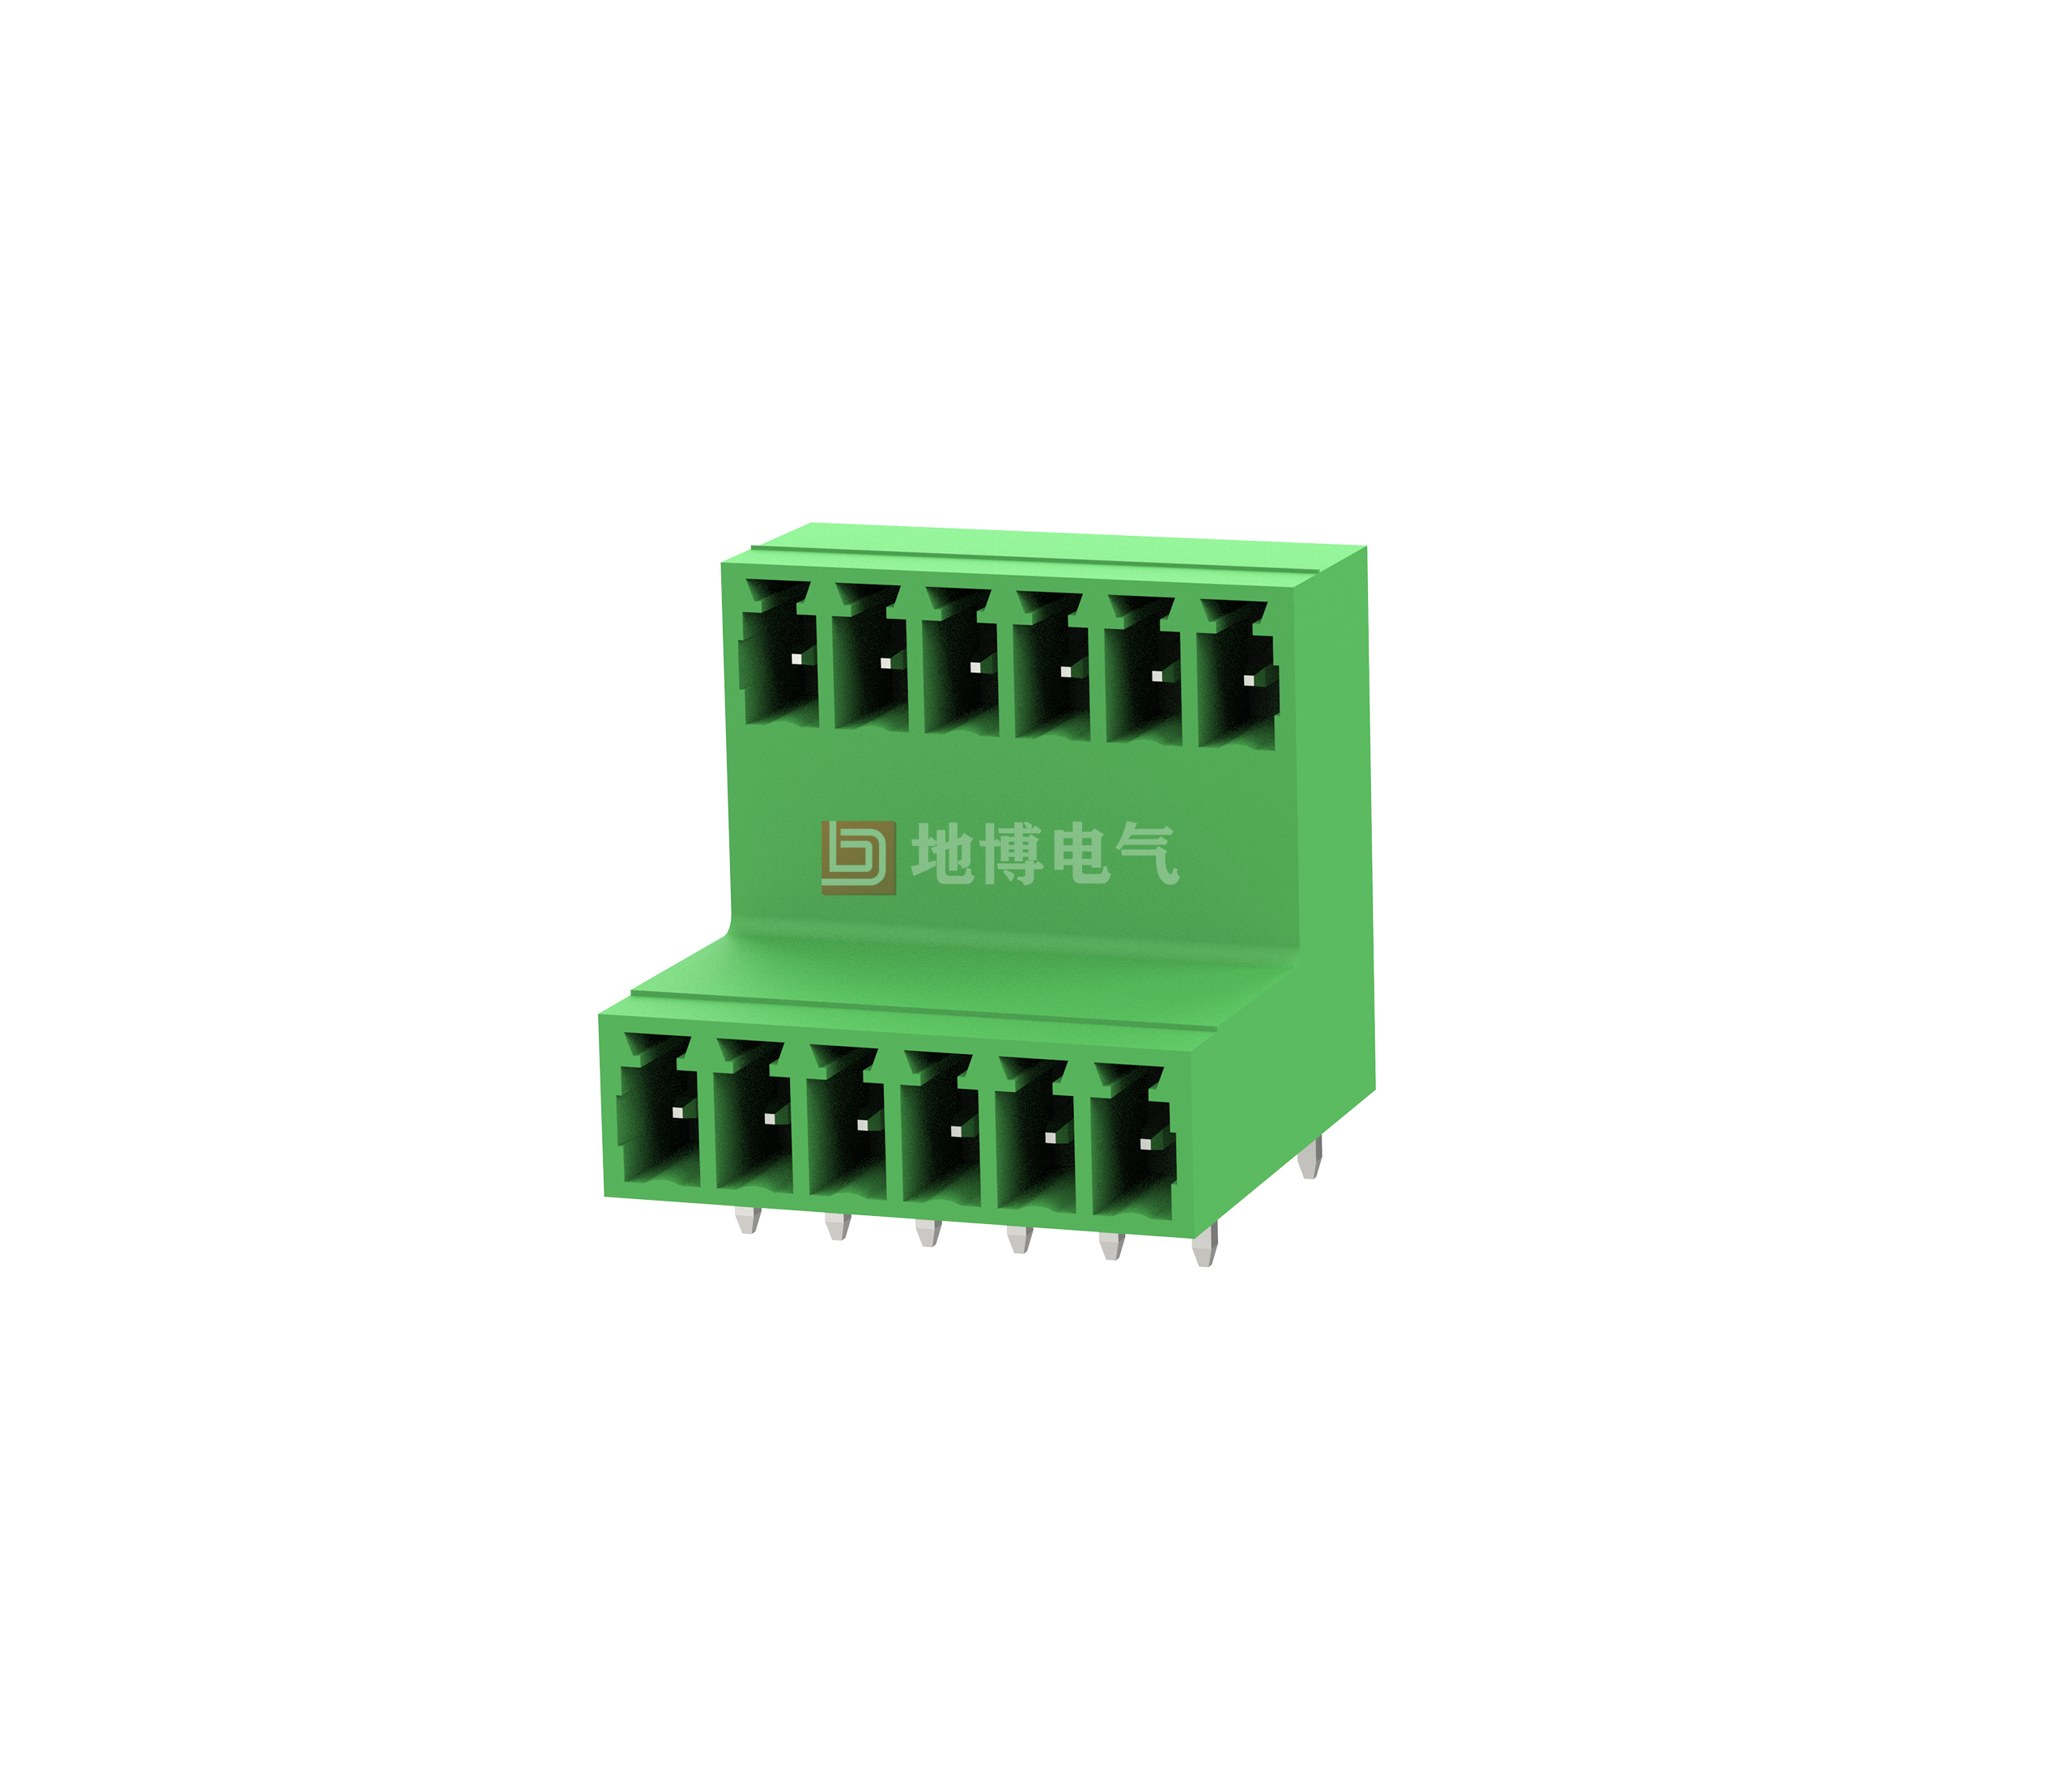 PCB socket DB2ERTC-3.81